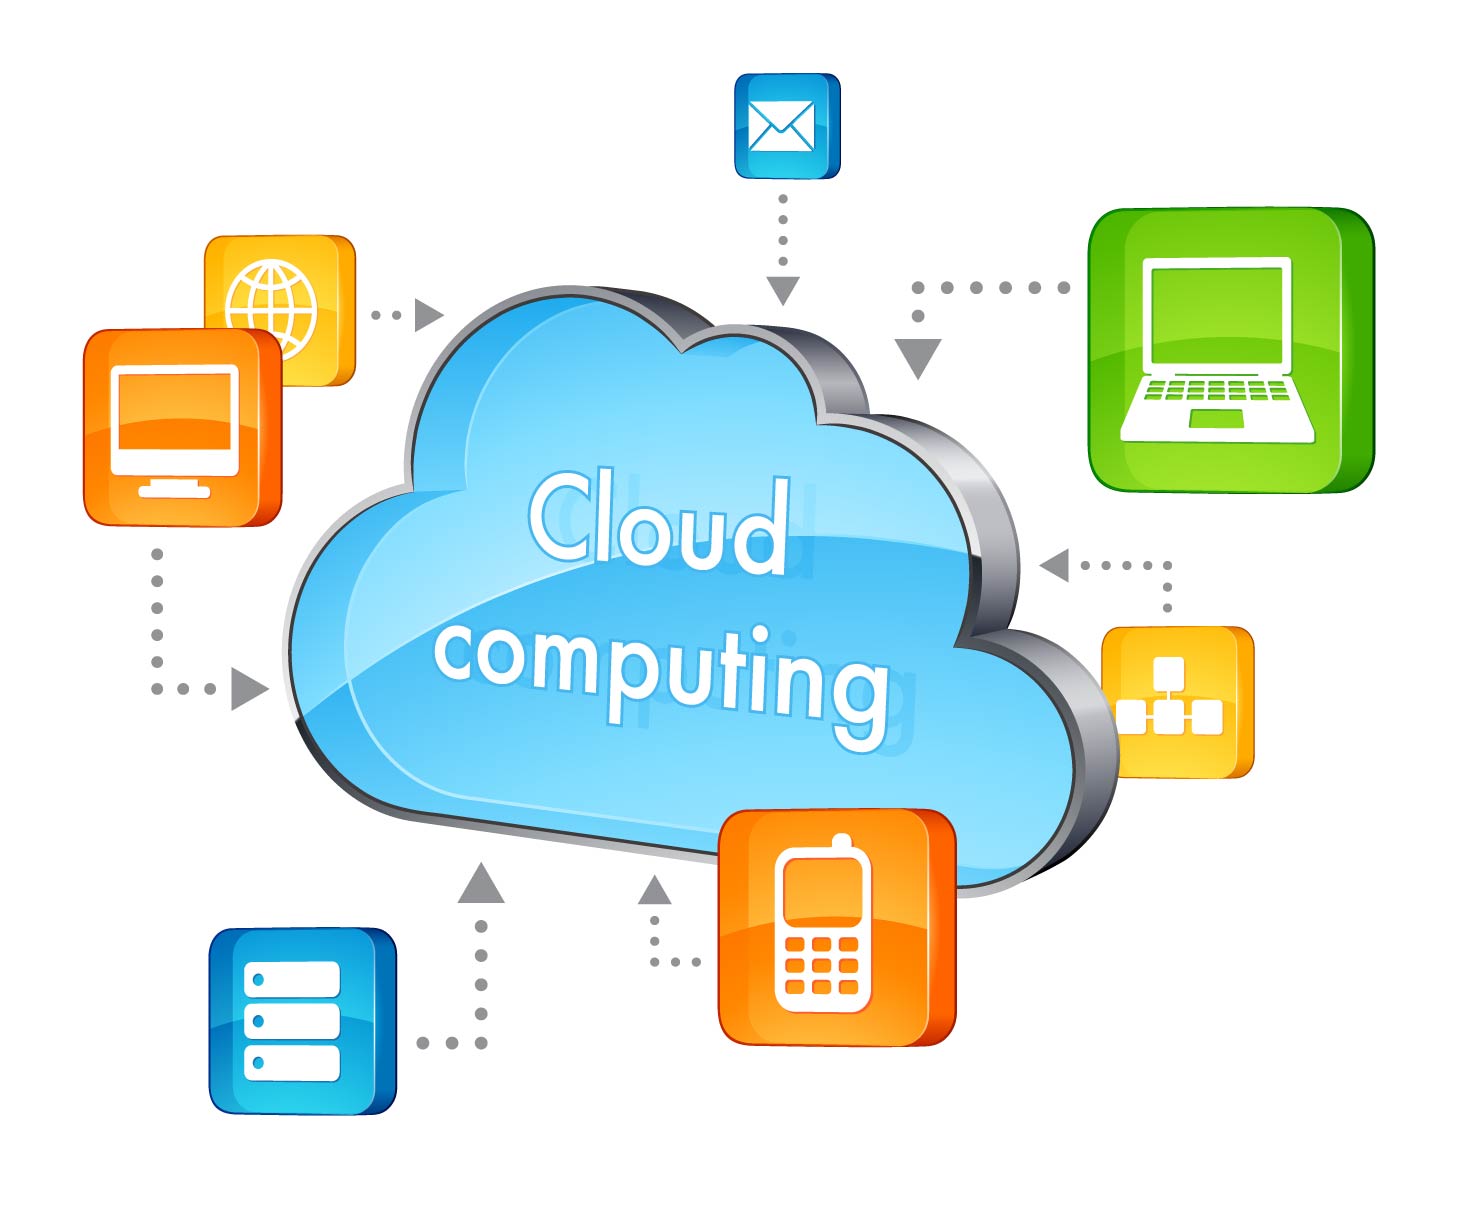 à¸œà¸¥à¸à¸²à¸£à¸„à¹‰à¸™à¸«à¸²à¸£à¸¹à¸›à¸ à¸²à¸žà¸ªà¸³à¸«à¸£à¸±à¸š cloud computing à¸„à¸·à¸­